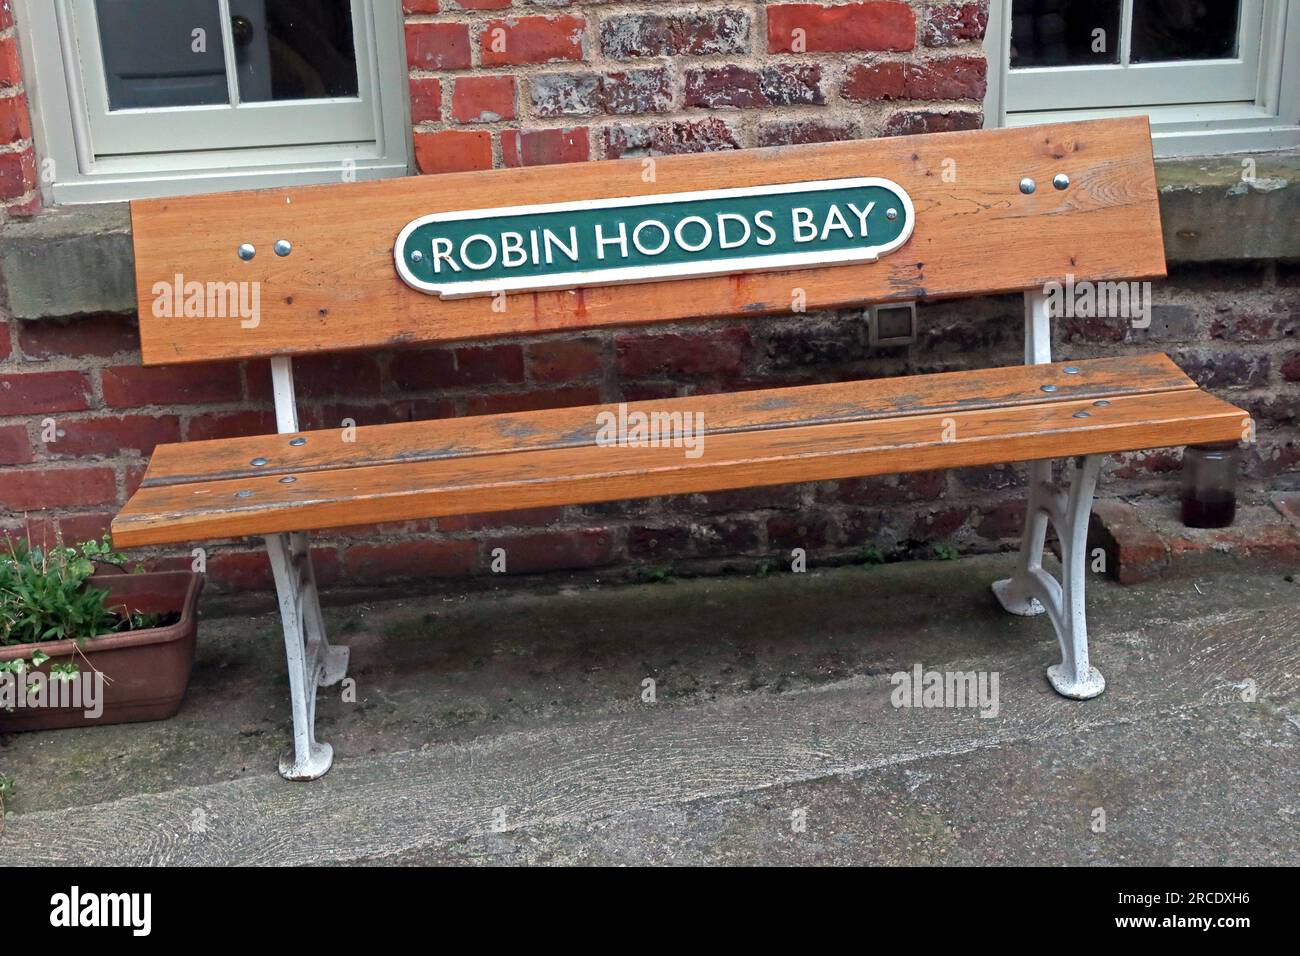 Banc à Robin Hoods Bay, avec un vieux panneau de gare en fonte, près de Whitby, North Yorkshire, Angleterre, Royaume-Uni, YO22 4SE Banque D'Images